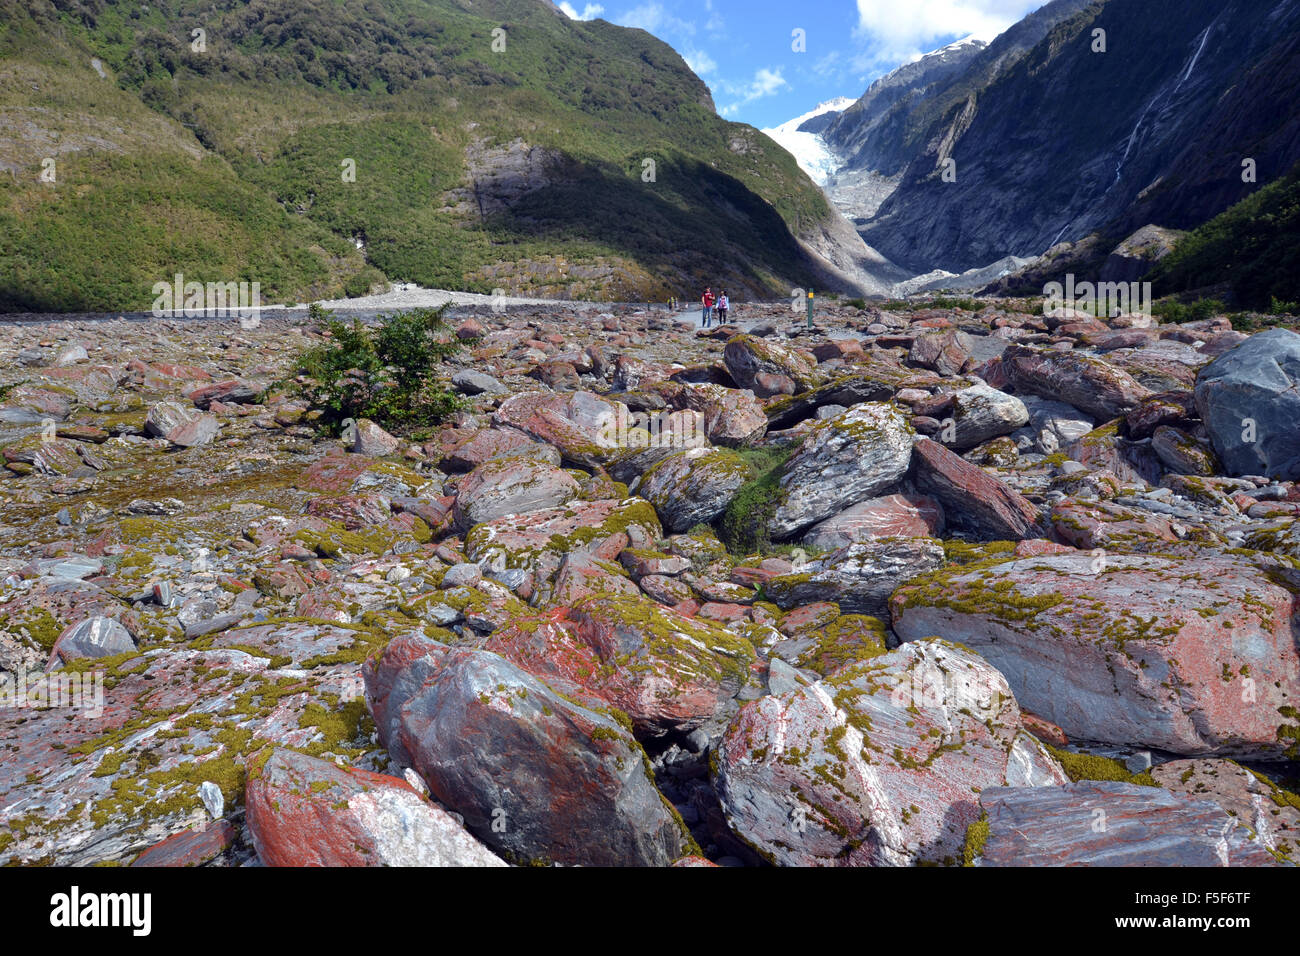 Rocas en el glaciar Franz Josef, el deshielo de los glaciares debido al cambio climático, Franz Josef, Isla del Sur, Nueva Zelanda Foto de stock